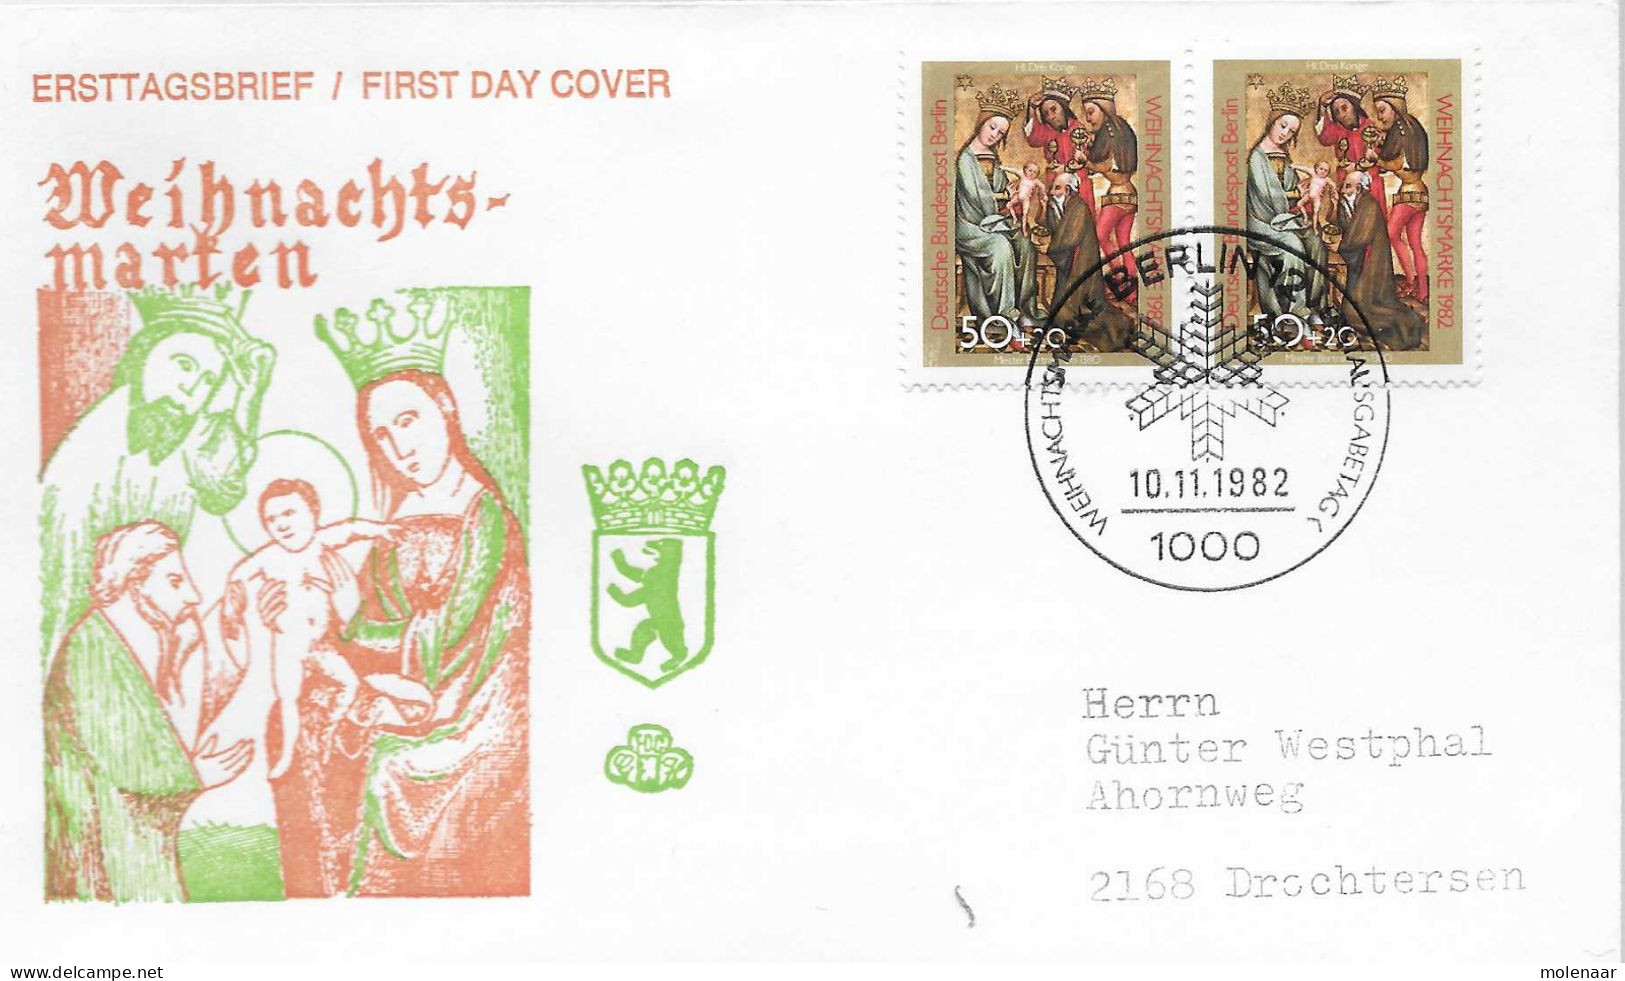 Postzegels > Europa > Duitsland > Berlijn > 1980-1990> Brief Met No. 698 2x (17184) - Storia Postale